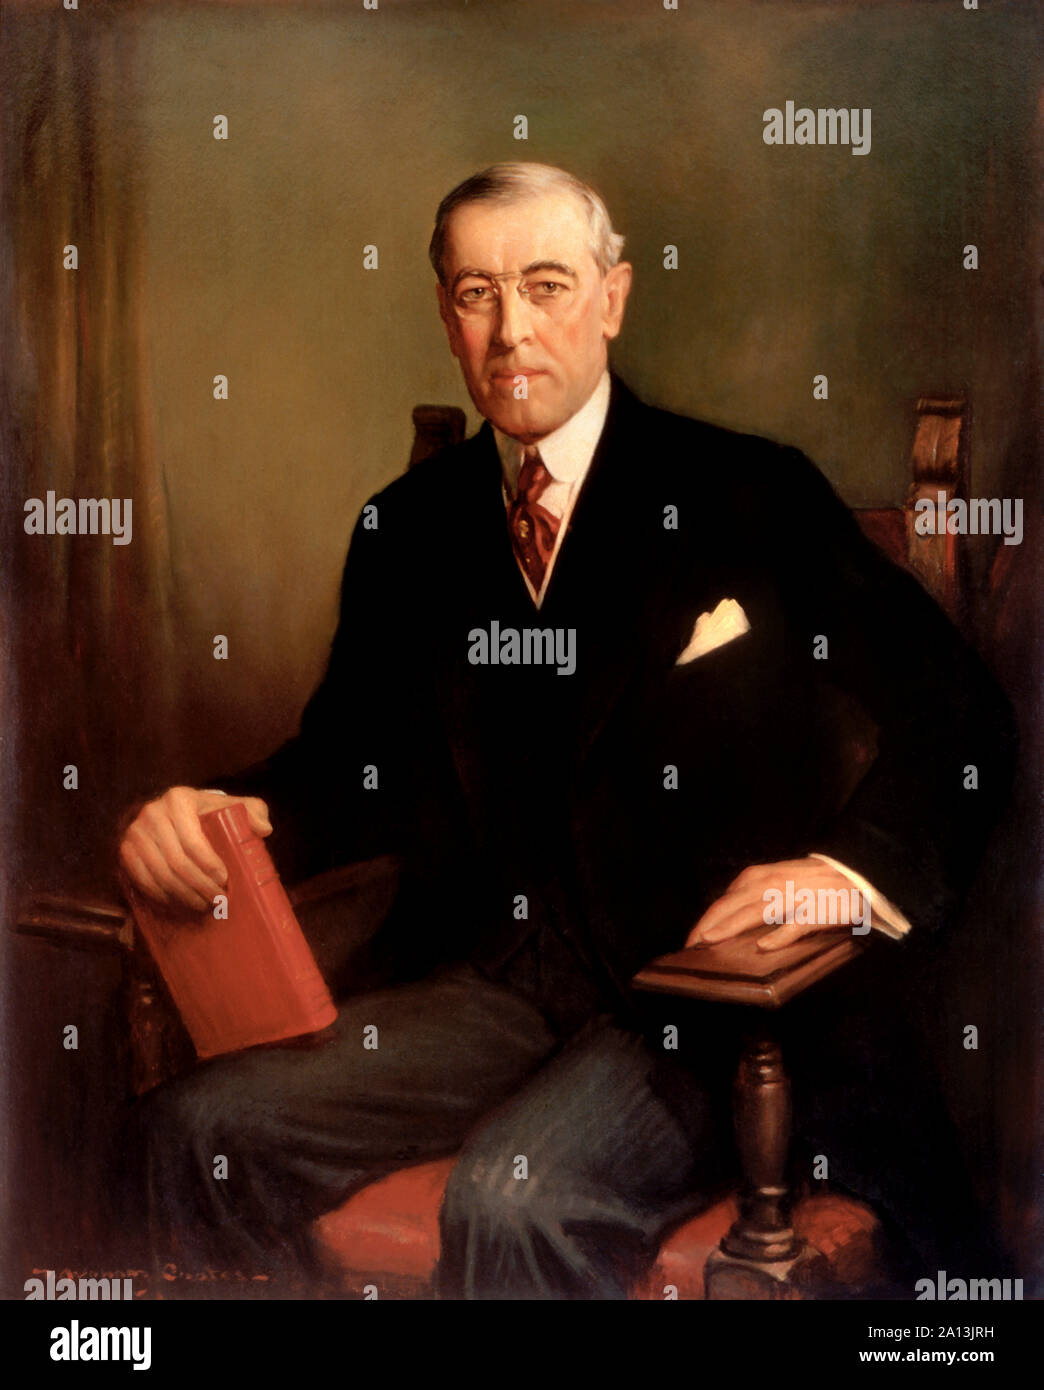 Presidenziale ufficiale della pittura a olio ritratto di Woodrow Wilson. Foto Stock